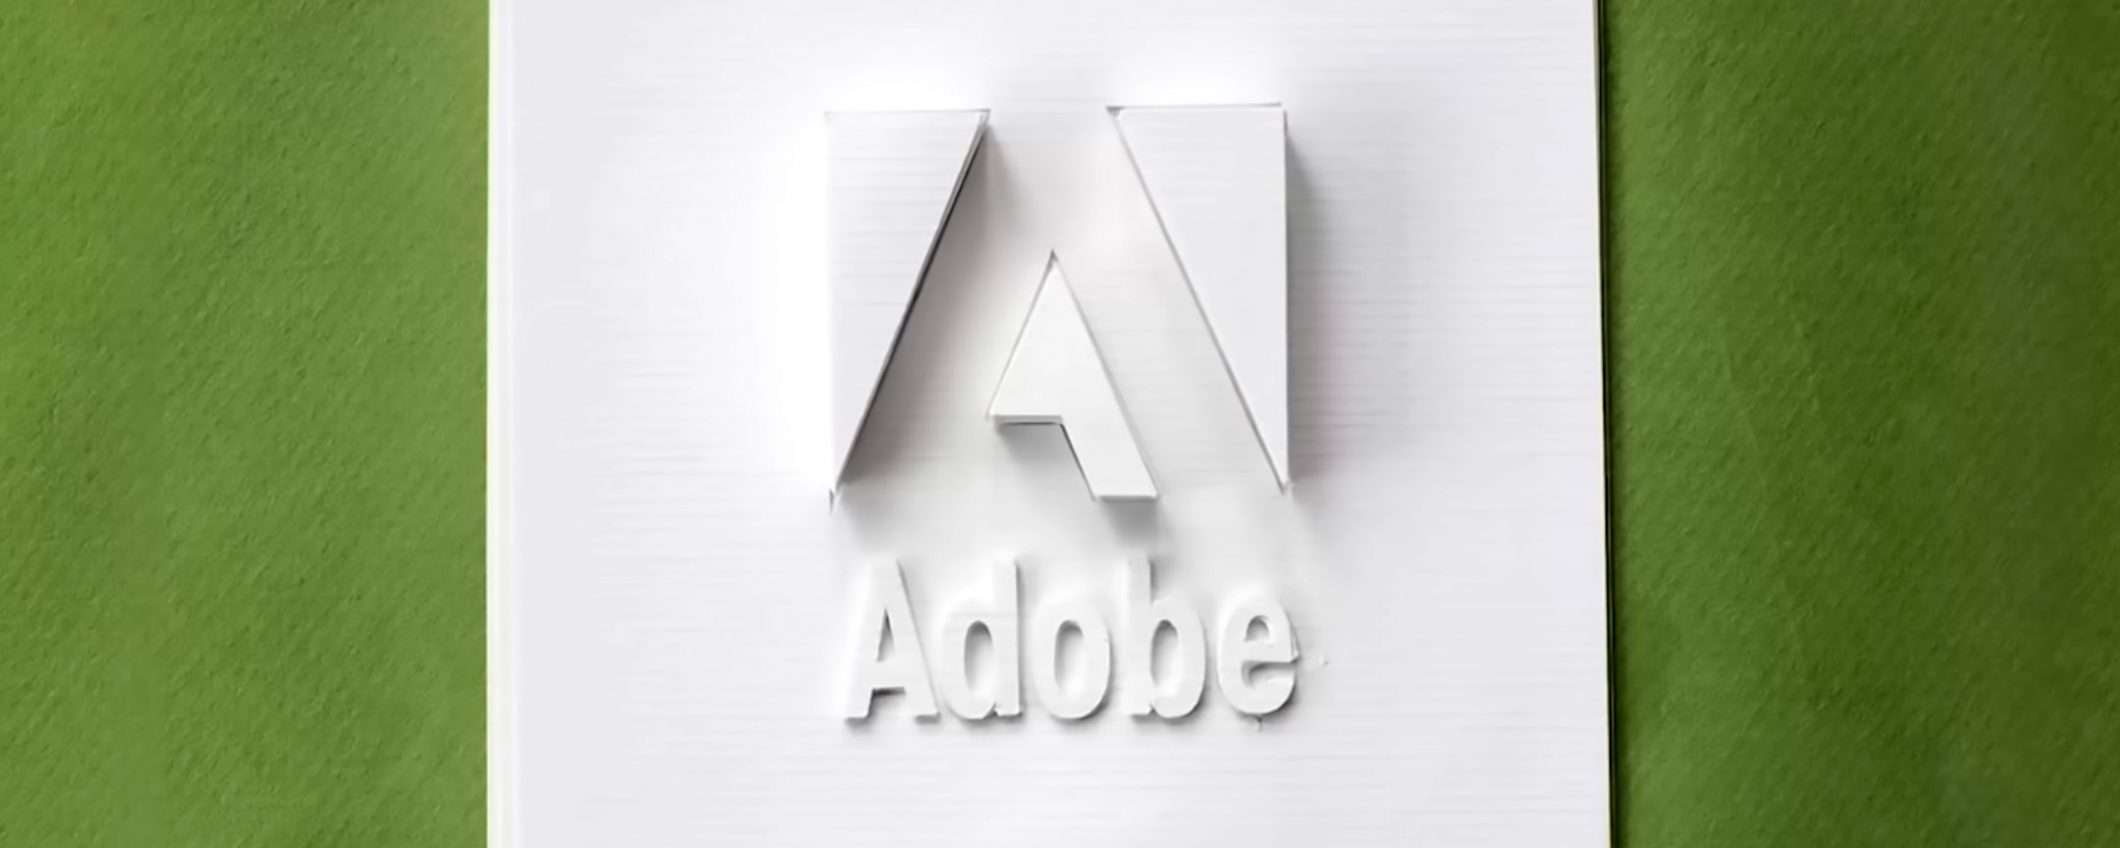 Adobe Creative Cloud: aggiorna o ti fanno causa